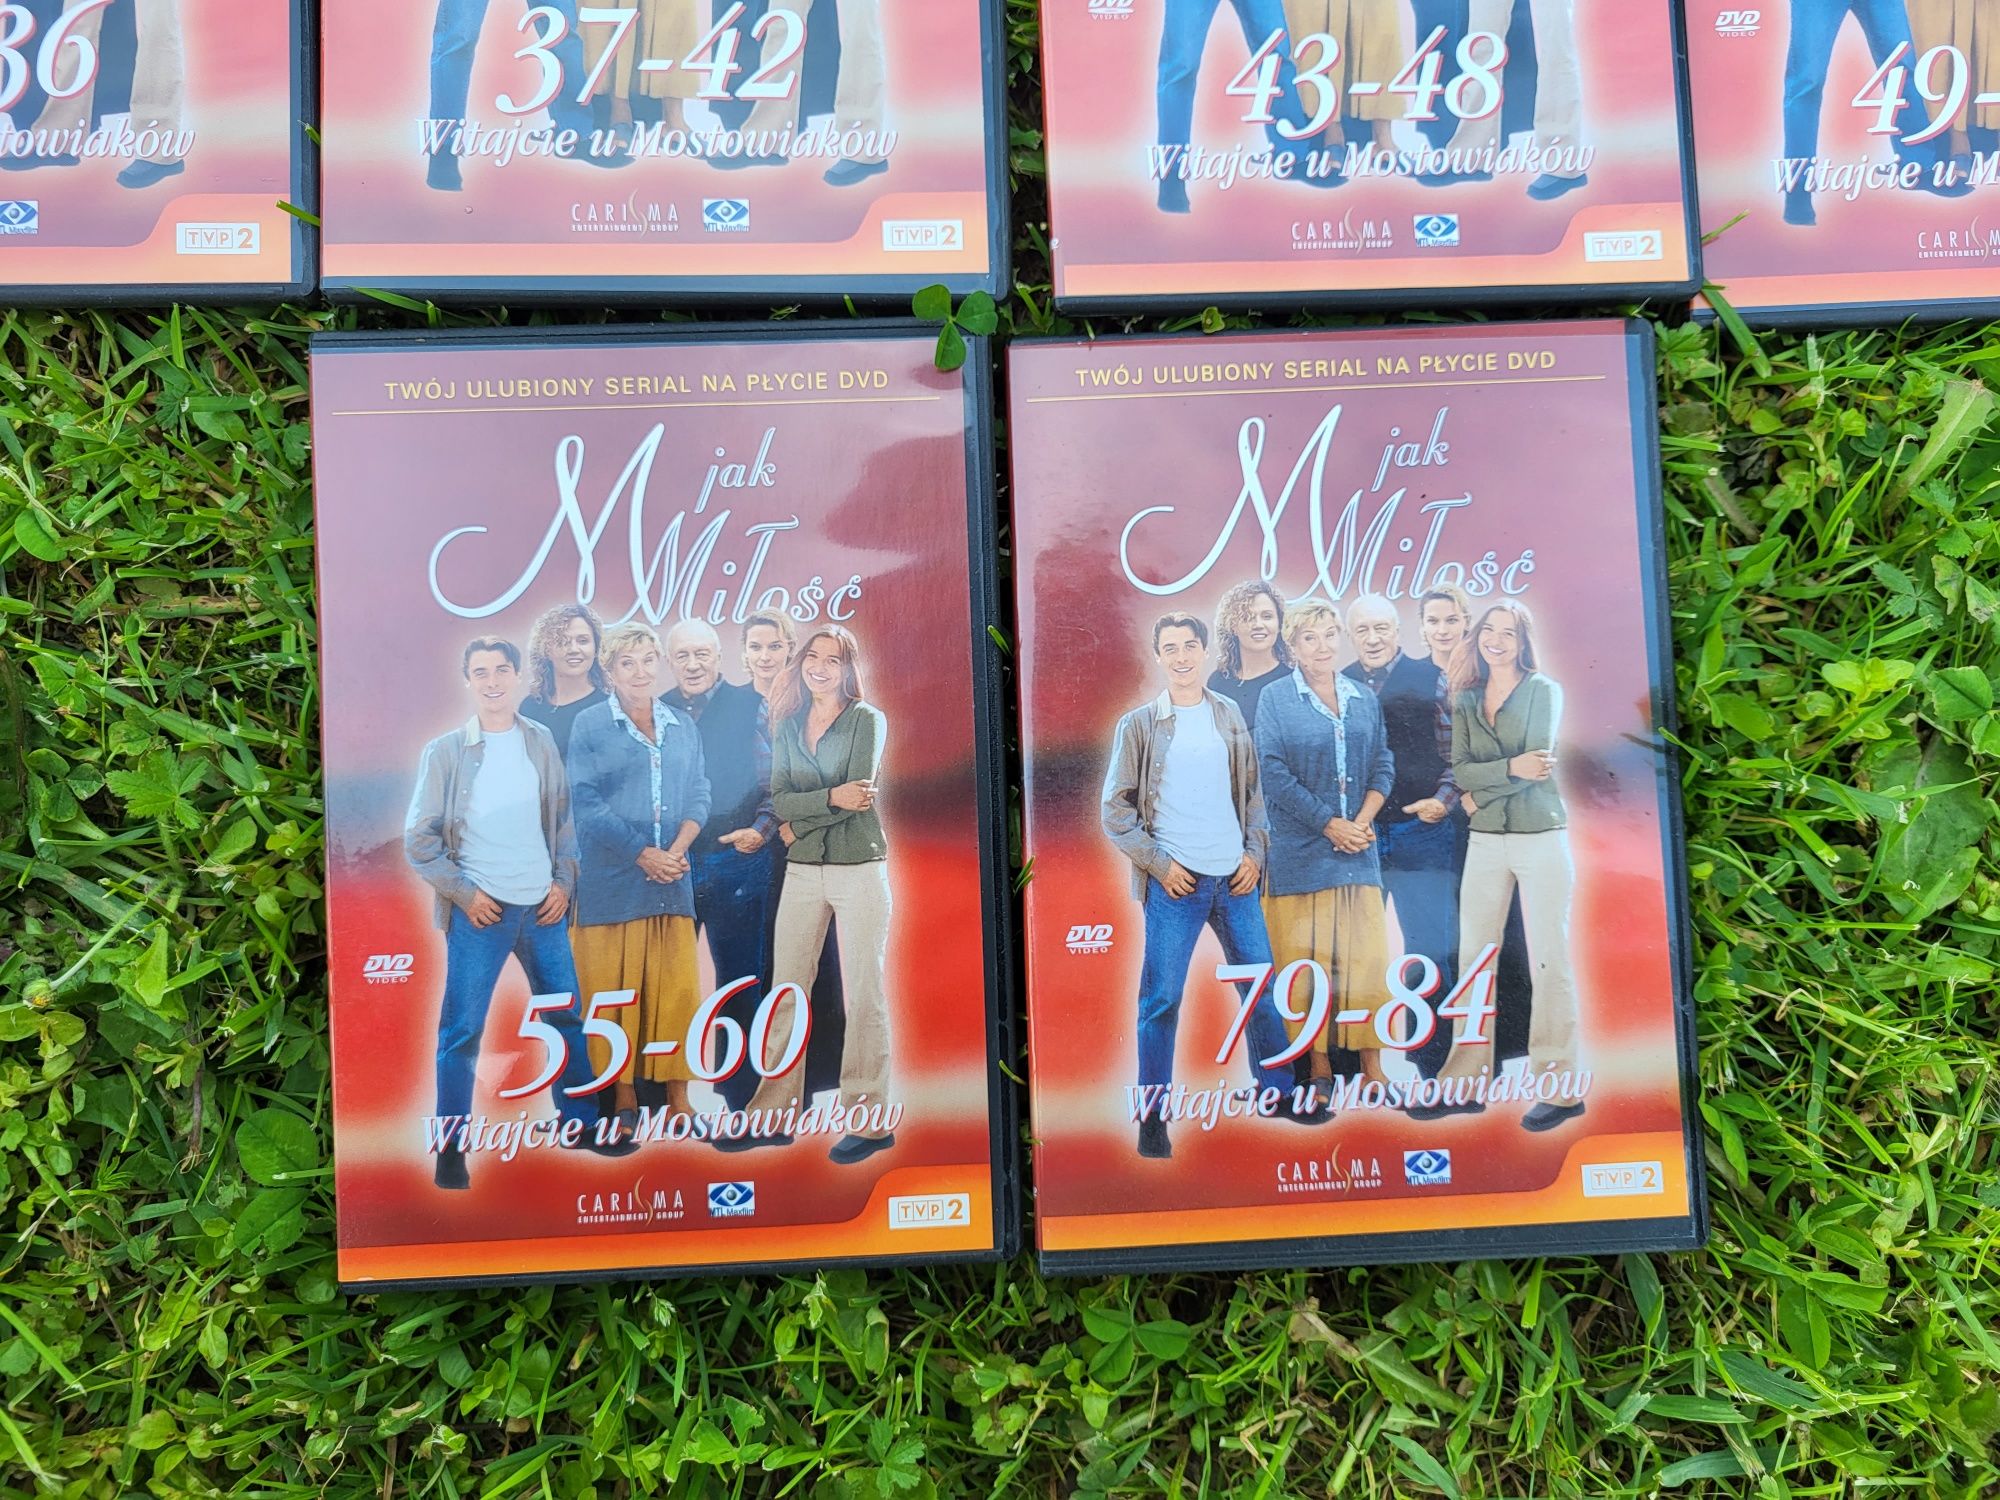 Film serial DVD M jak miłość 1-60, 79-84